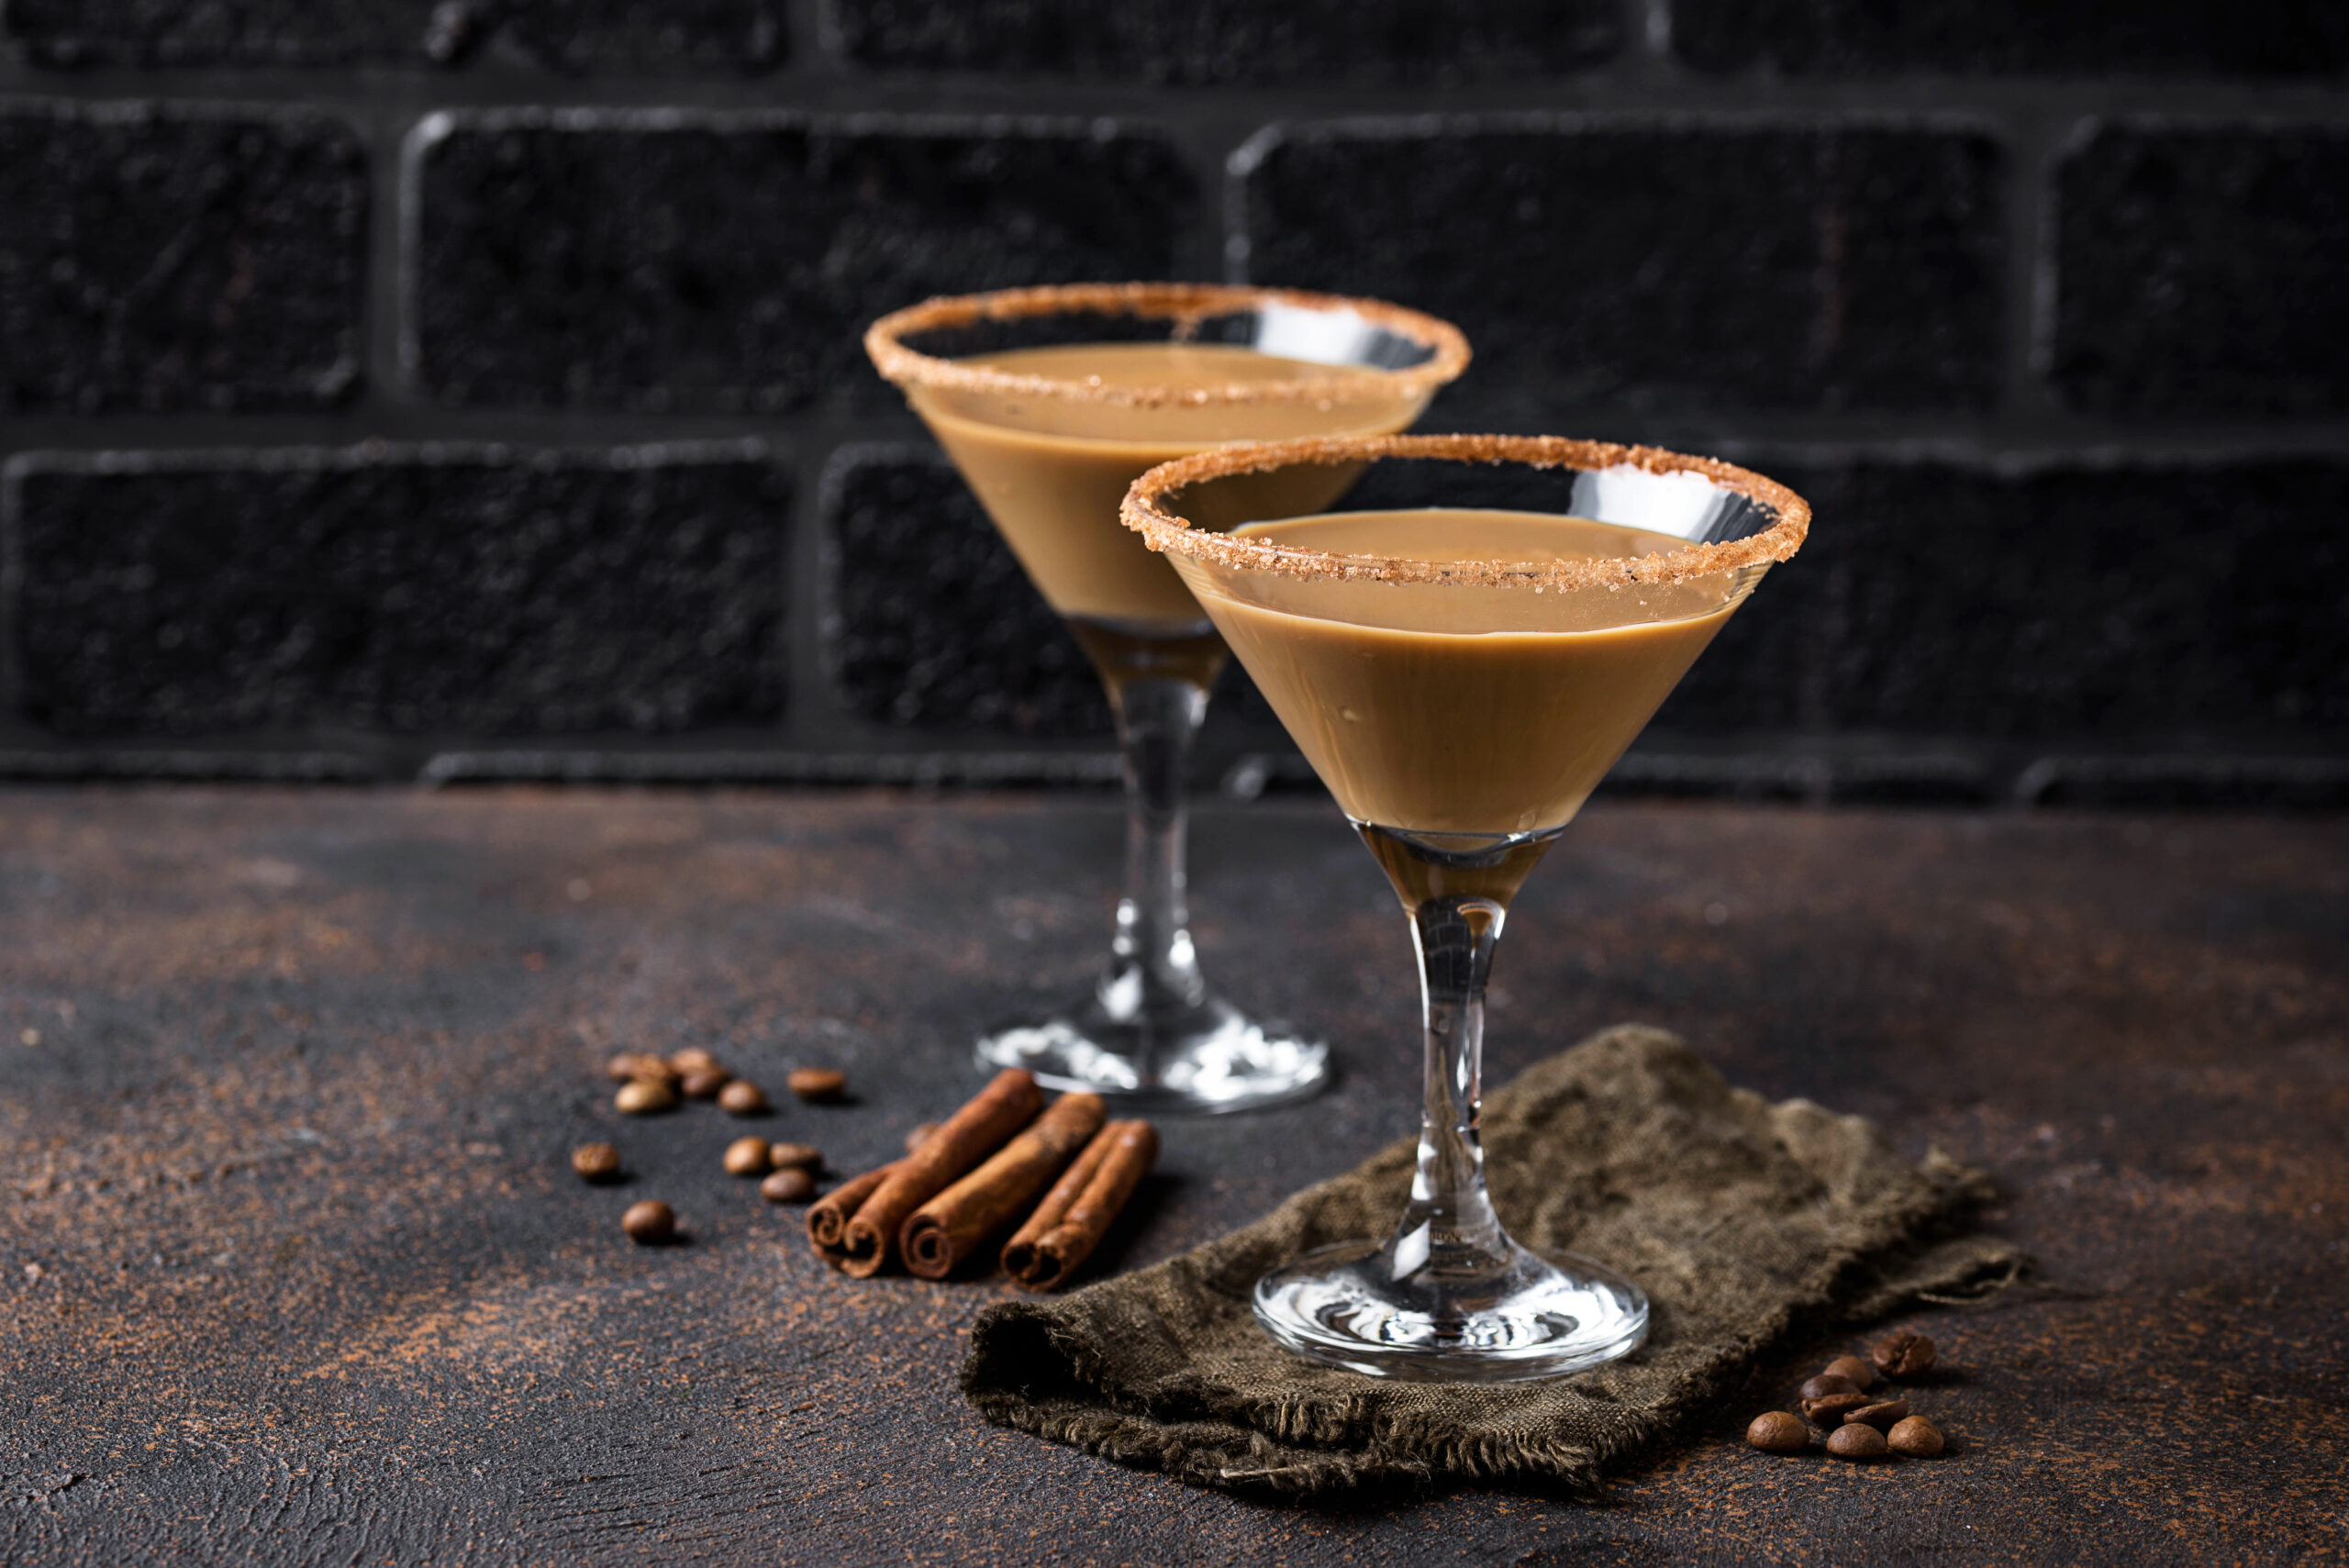 Chocolate martini cocktail or Irish cream liquor